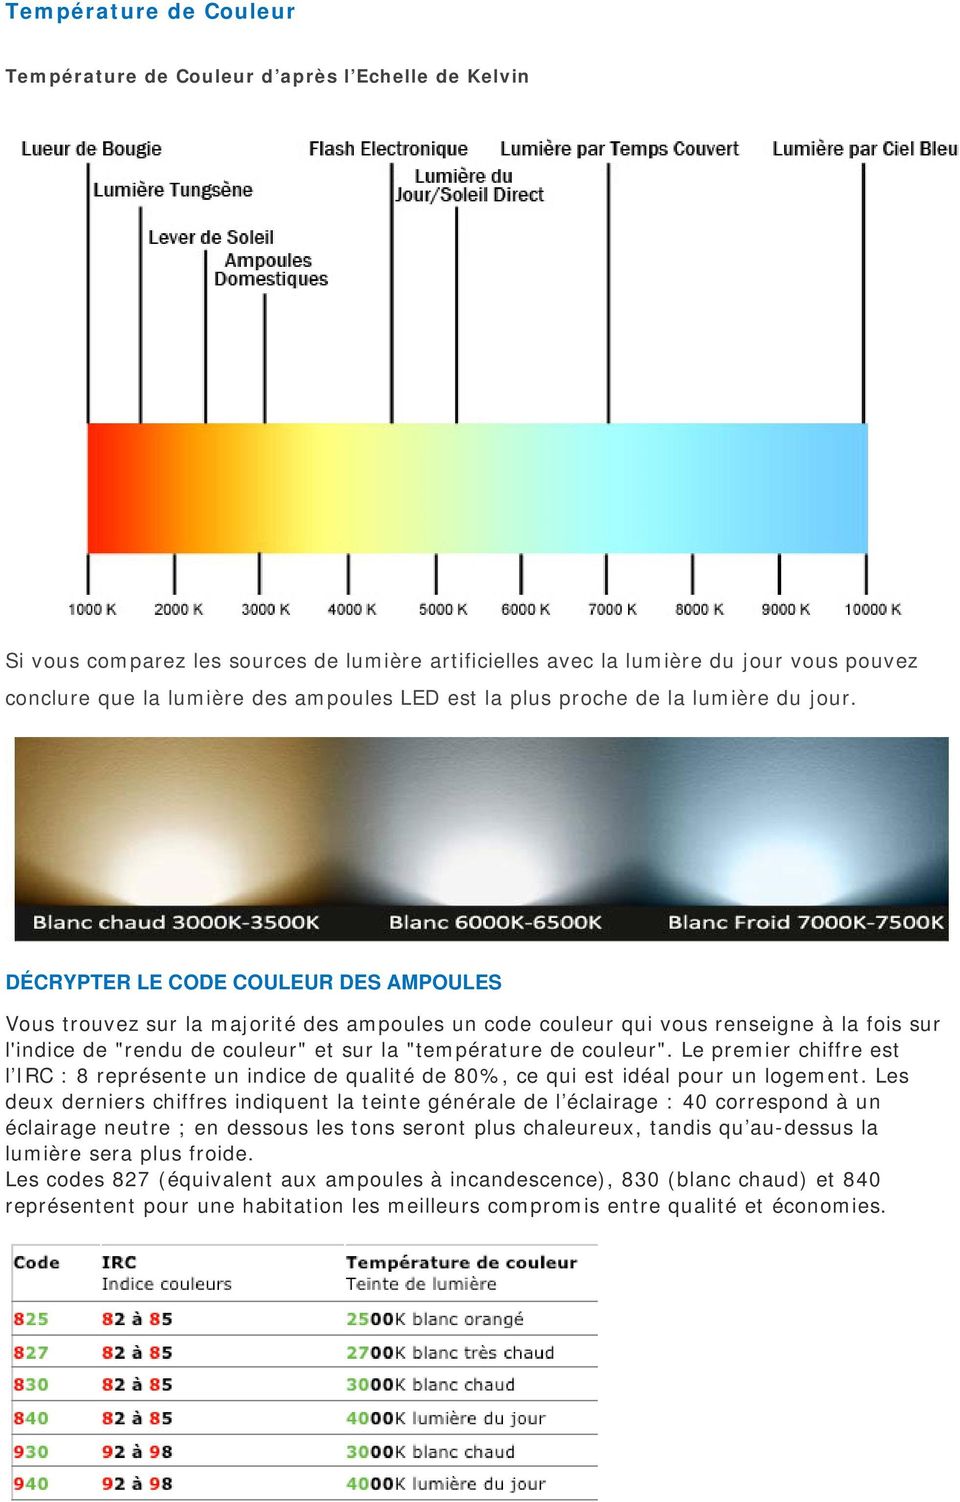 DÉCRYPTER LE CODE COULEUR DES AMPOULES Vous trouvez sur la majorité des ampoules un code couleur qui vous renseigne à la fois sur l'indice de "rendu de couleur" et sur la "température de couleur".